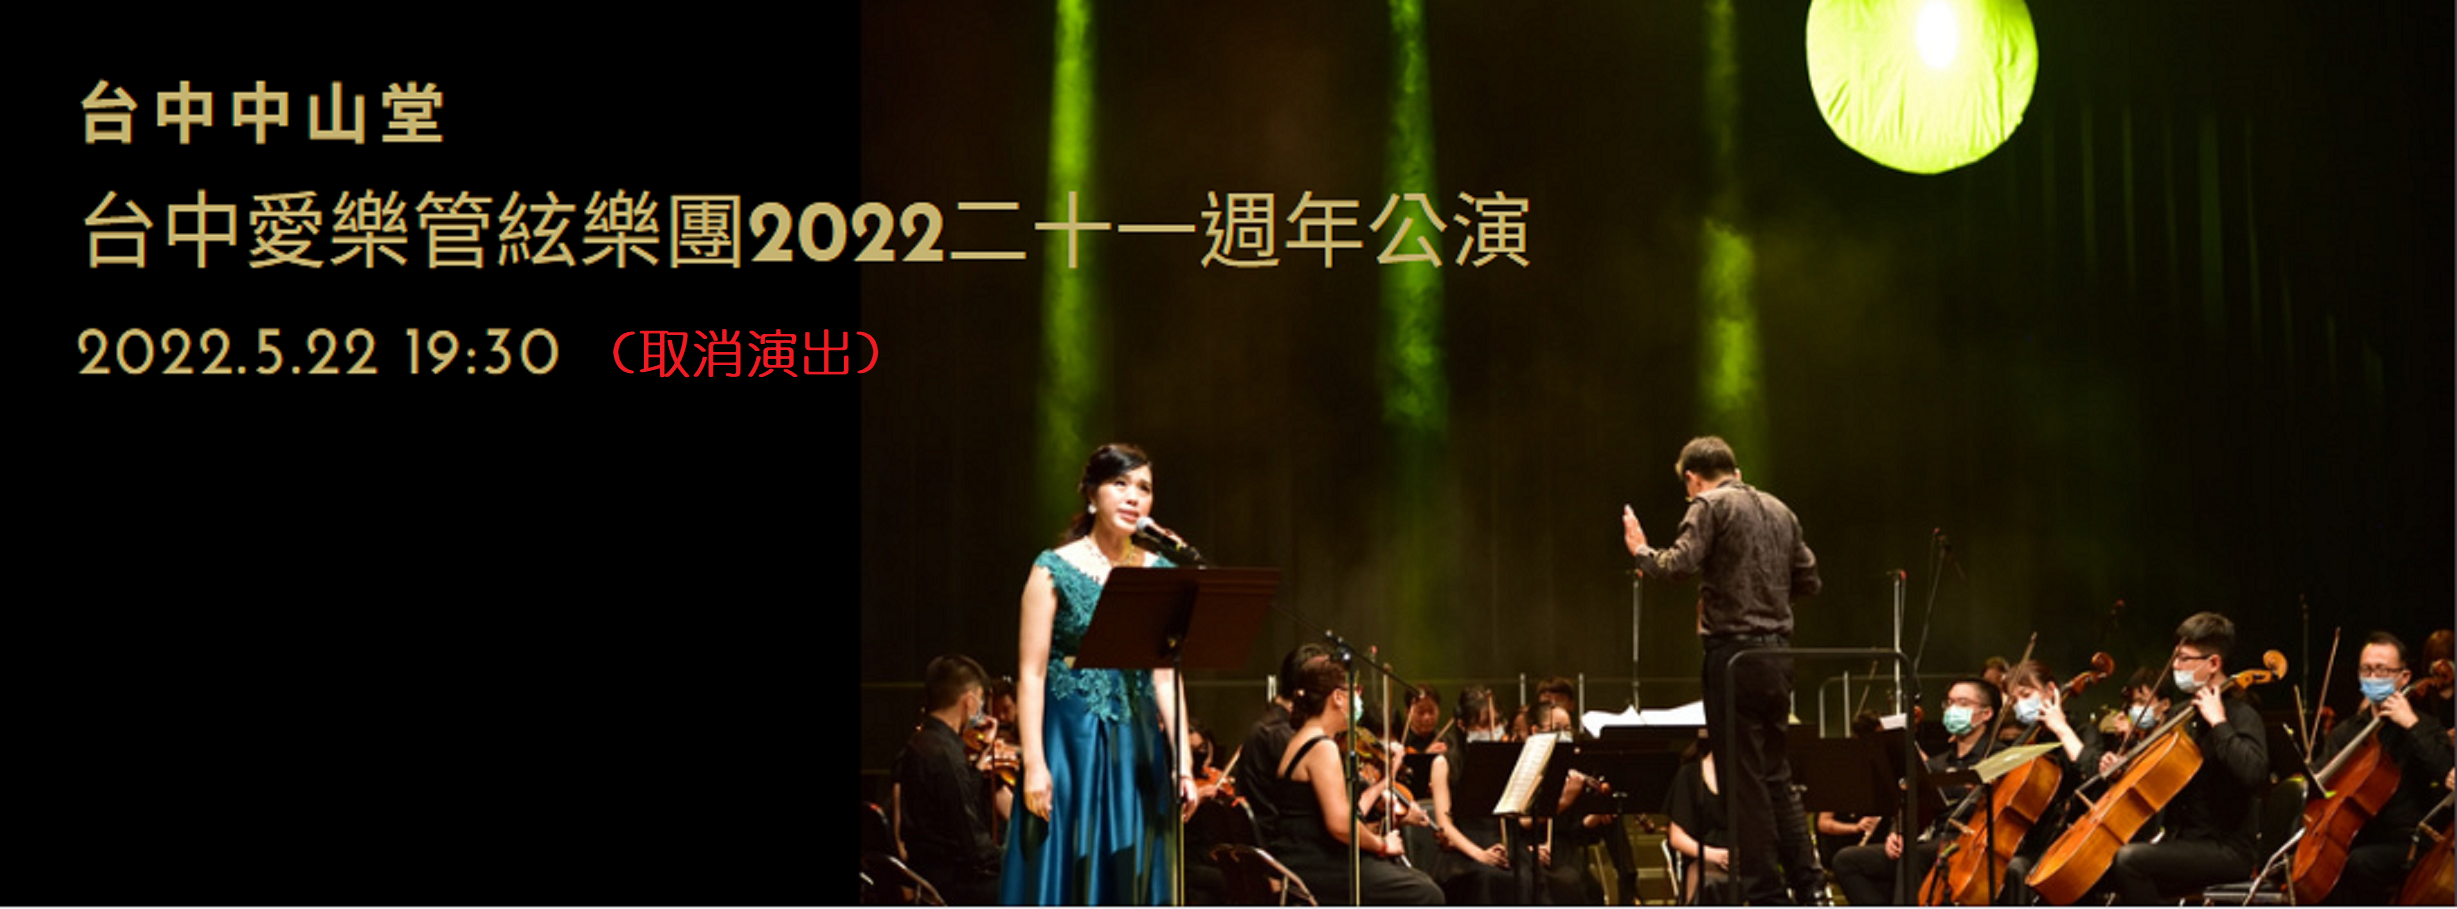 台中愛樂管絃樂團2022二十一週年公演